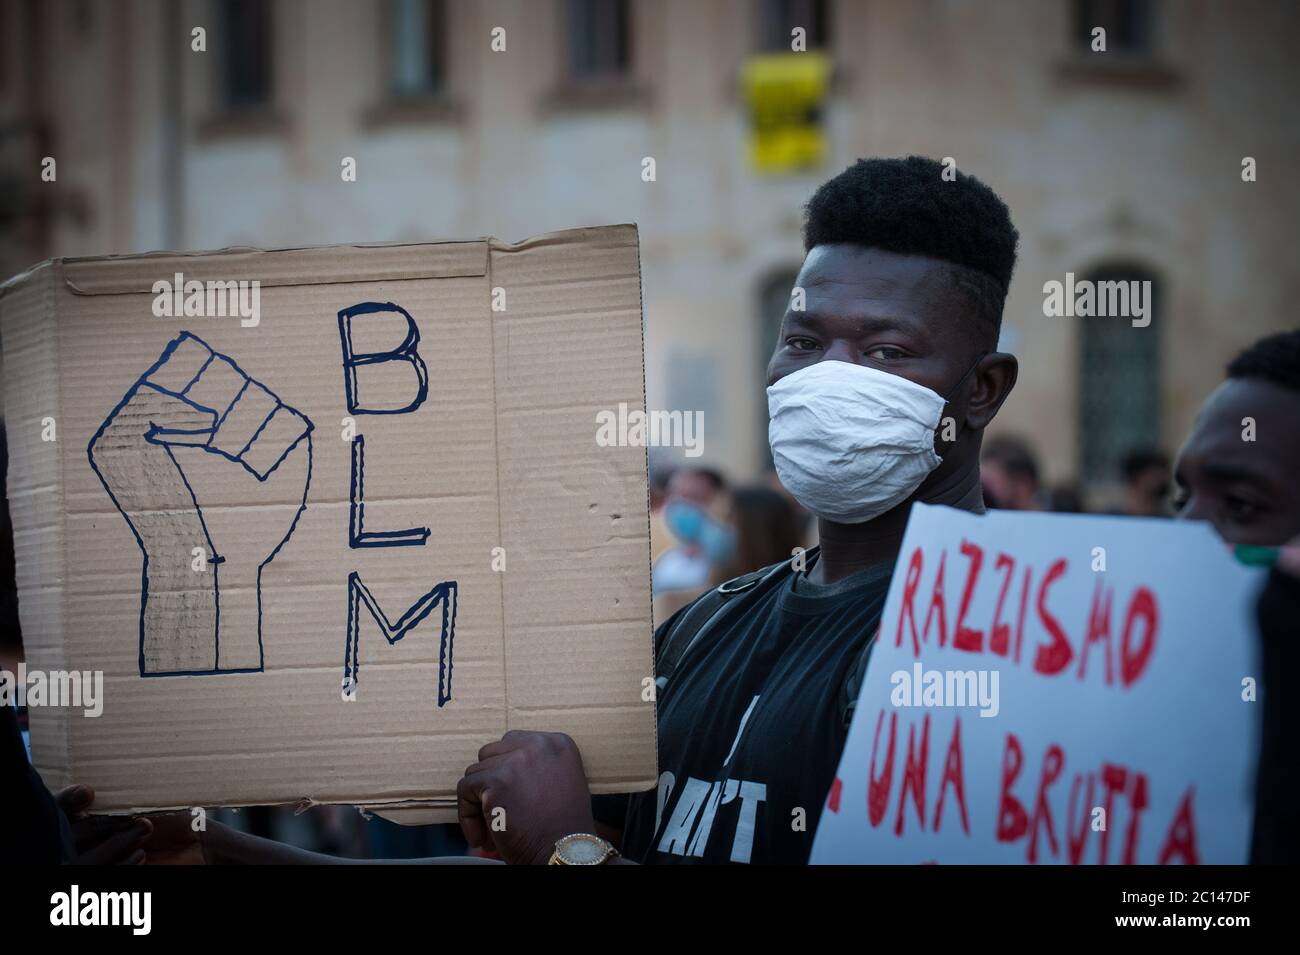 Flash mum contra el racismo en Lecce, Italia: La materia de la vida negra Foto de stock